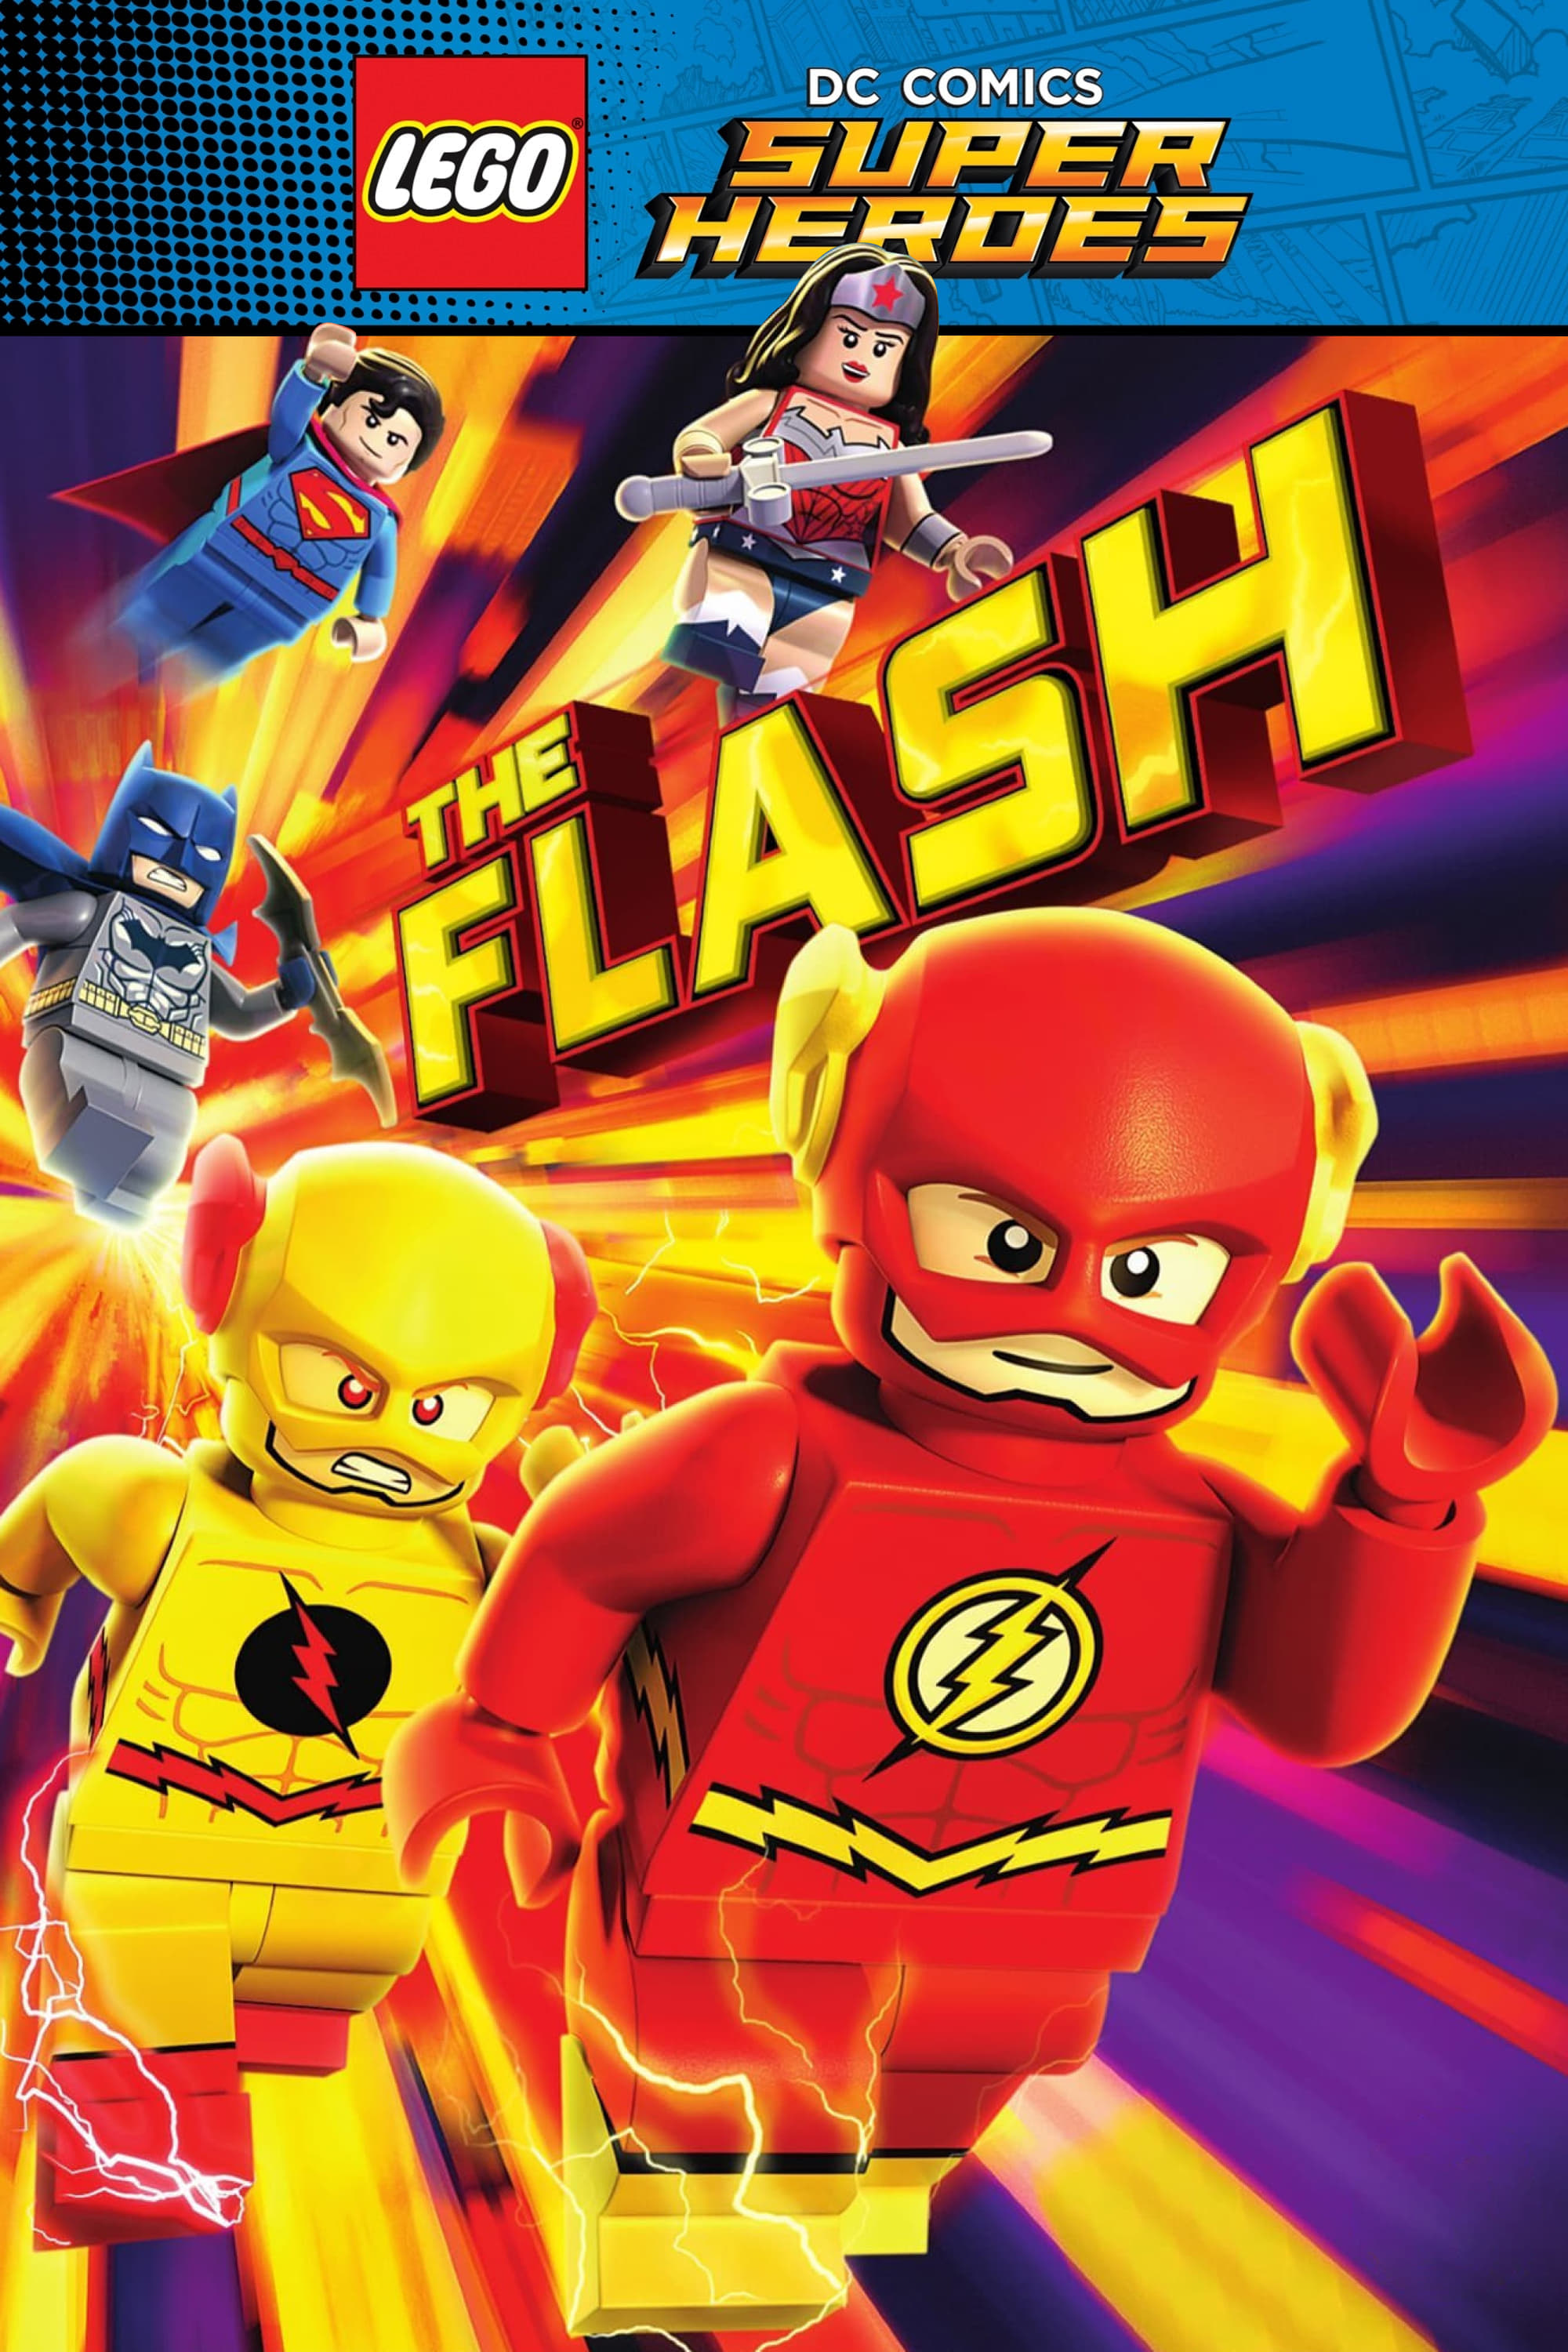 LEGO Super Heróis DC: O Flash